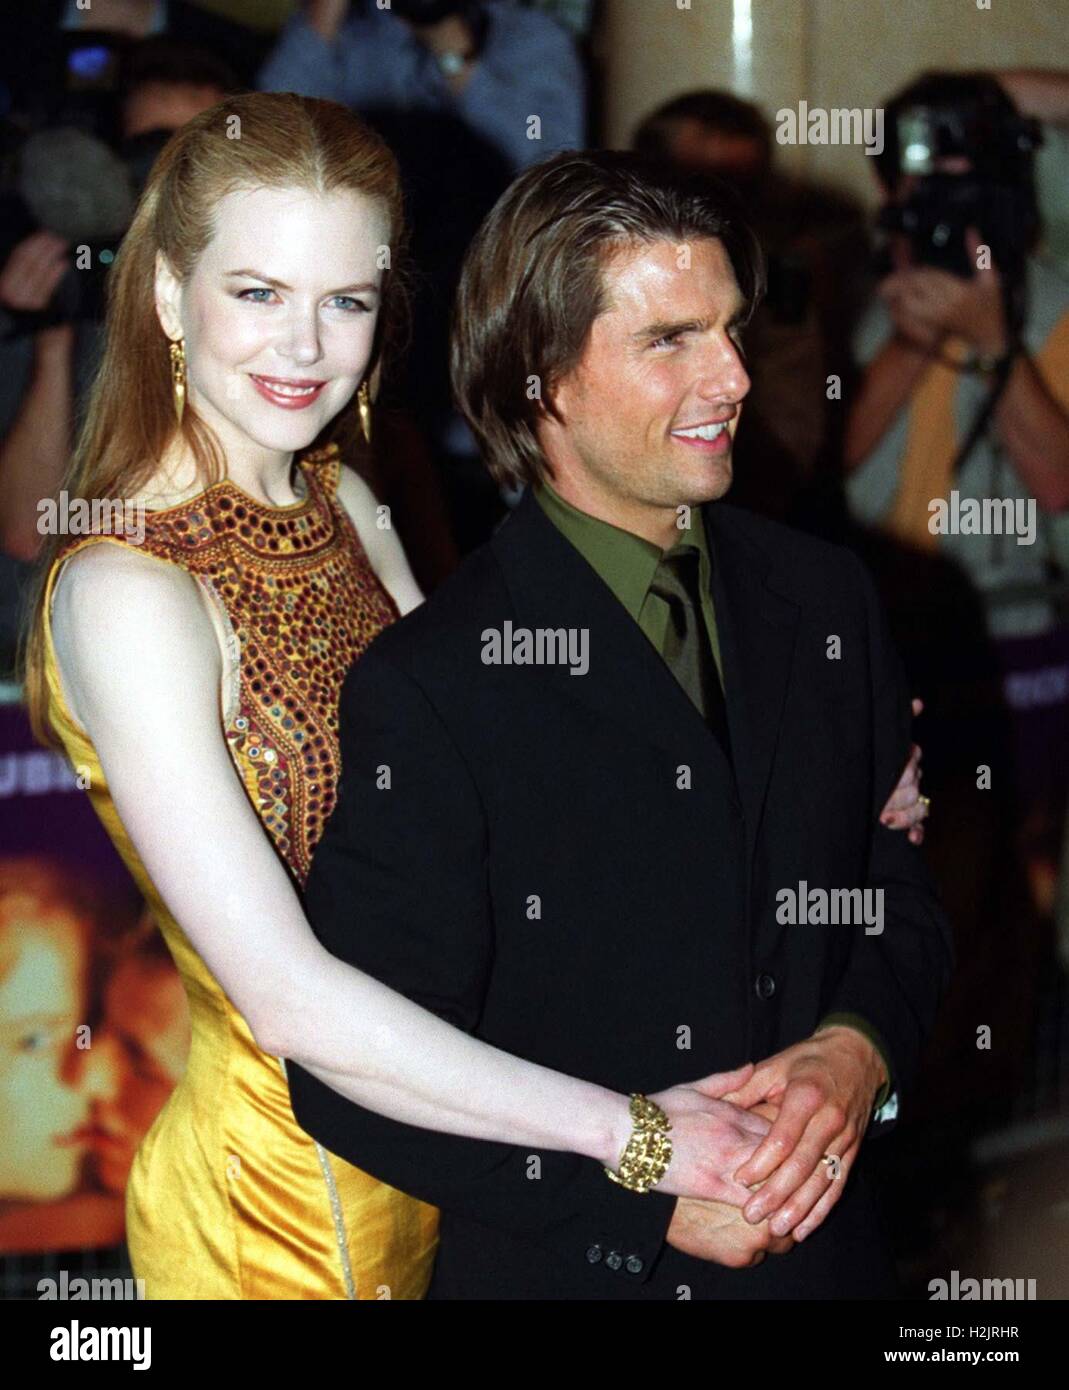 Datei Foto datiert 09.03.99 von Tom Cruise und Nicole Kidman. Die  Schauspielerin hat zugegeben, dass sie schockiert jetzt zu denken, wie jung  sie war, als sie heirateten Stockfotografie - Alamy